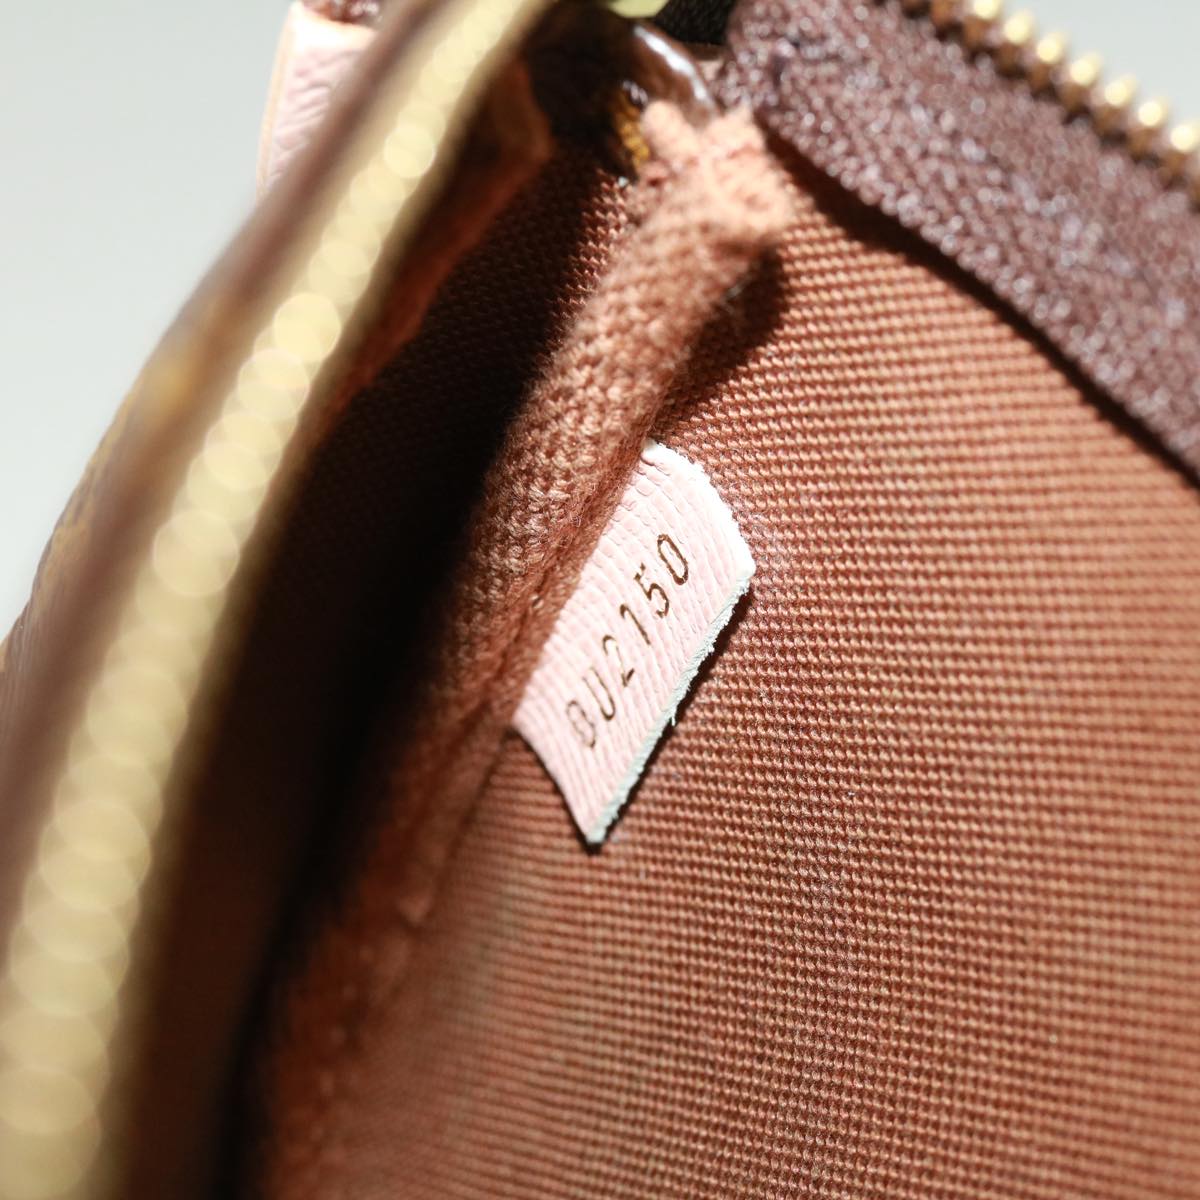 Louis Vuitton Monogram Canvas Mini Pochette Accessoires Bag